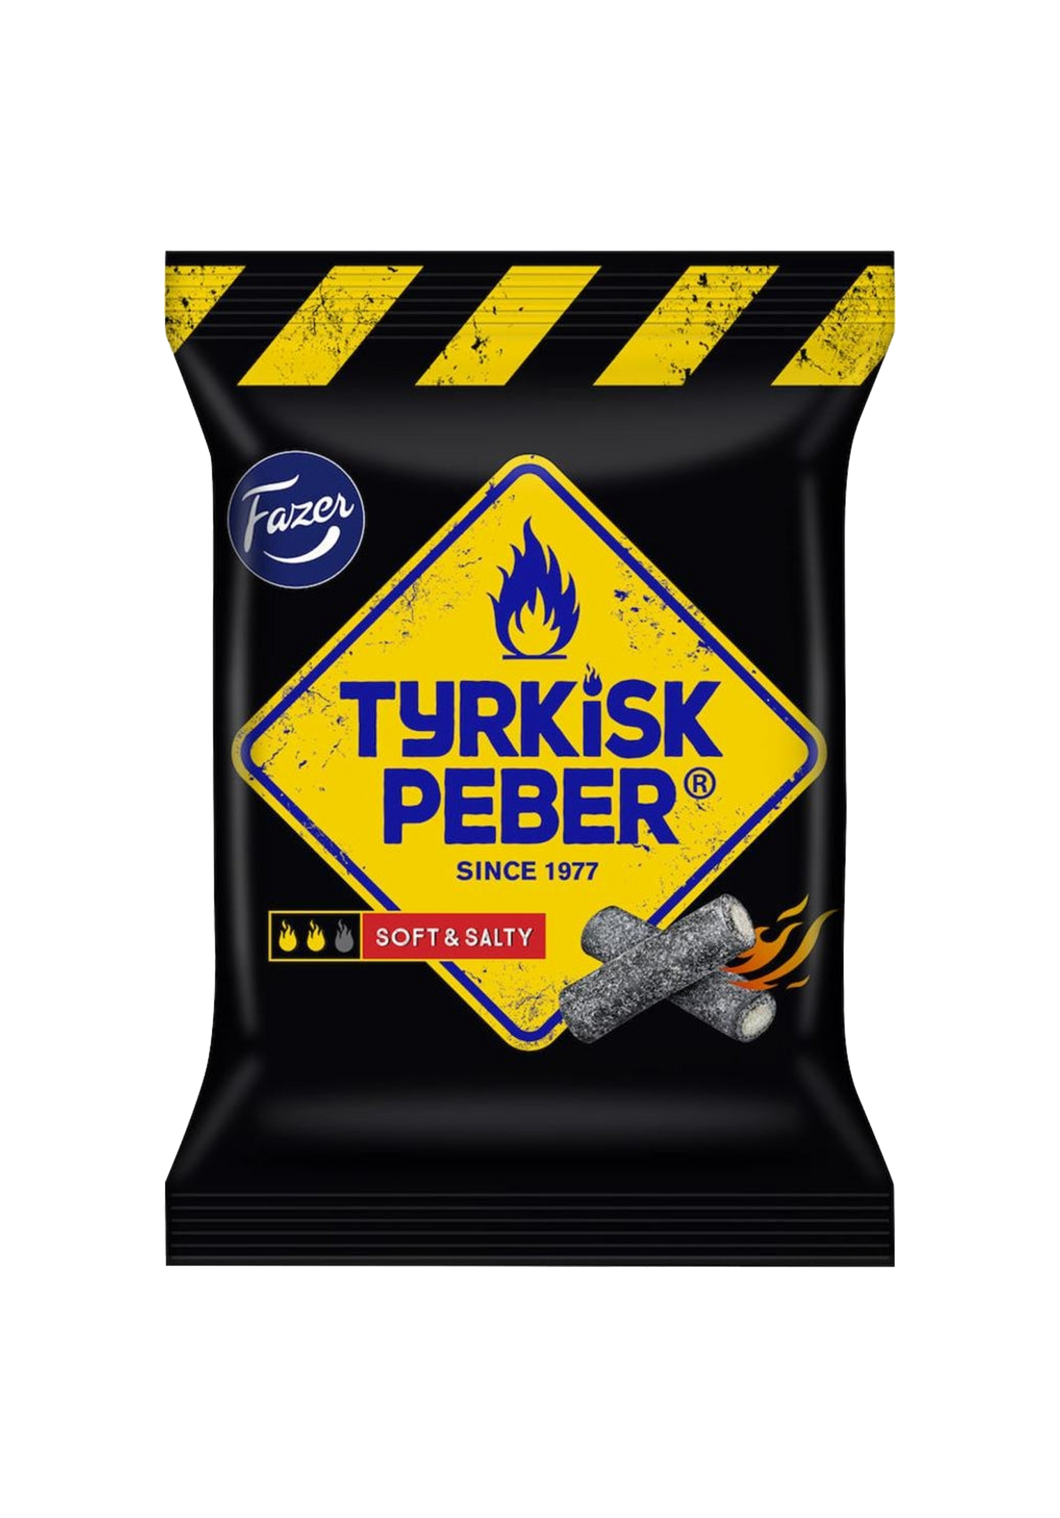 Fazer Tyrkisk Peber Soft & Flaky 120g